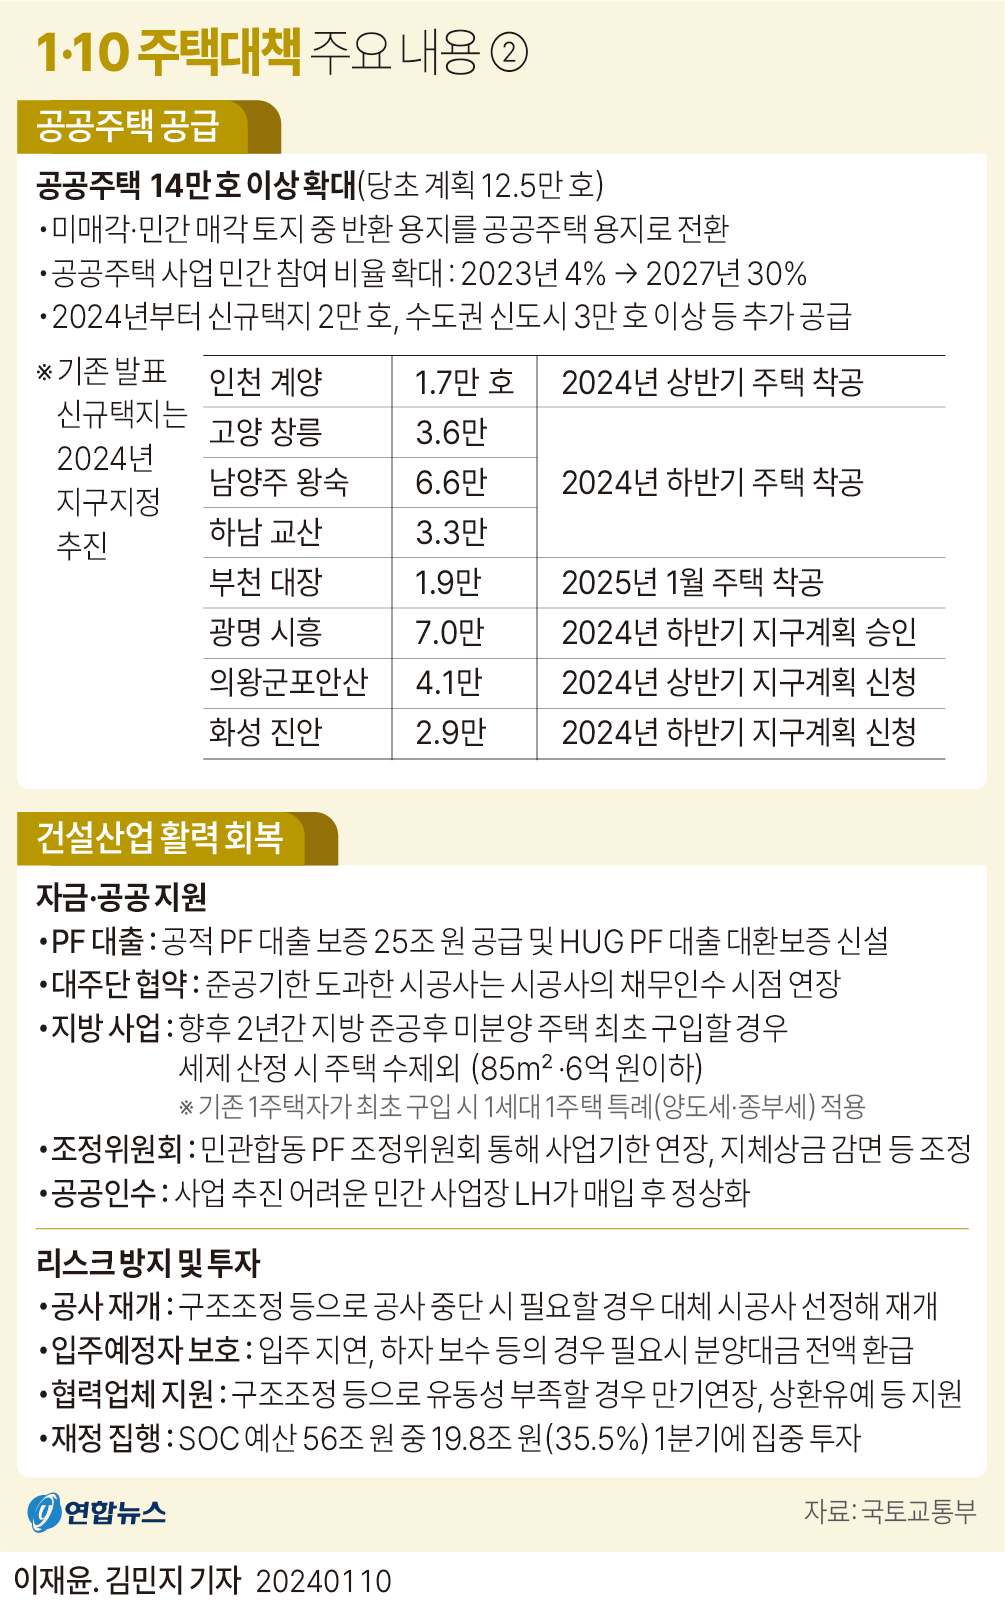 [그래픽] 1·10 주택대책 주요 내용②